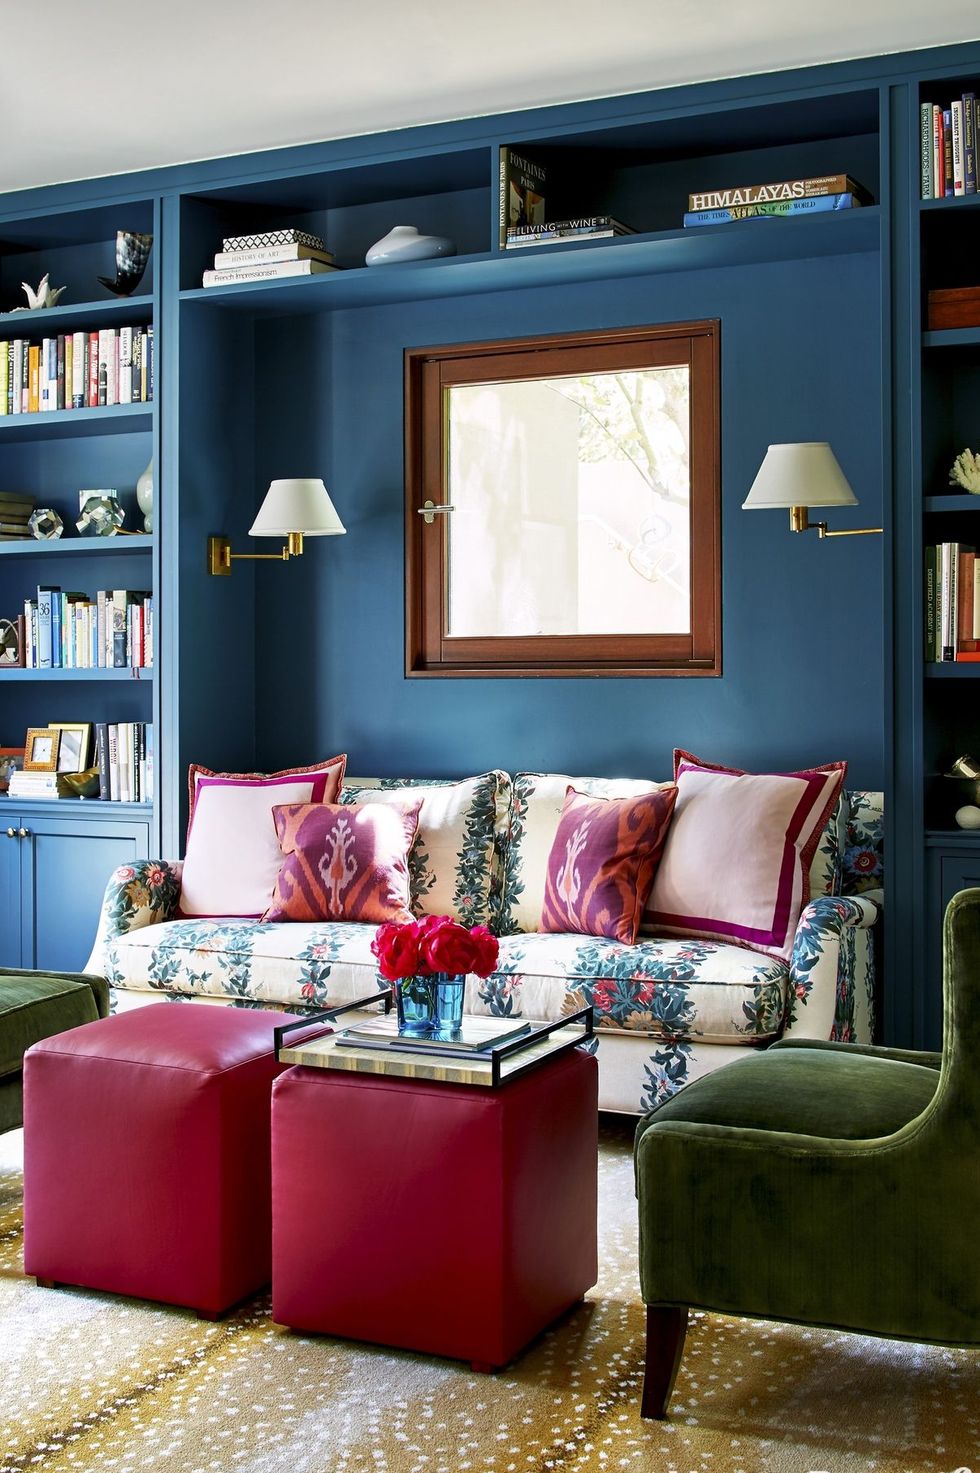 hình ảnh phòng khách nhỏ với tường sơn màu xanh dương, ghế bành xanh lá, bàn trà là ghế Ottoman màu hồng, sofa bọc vải hoa hút mắt